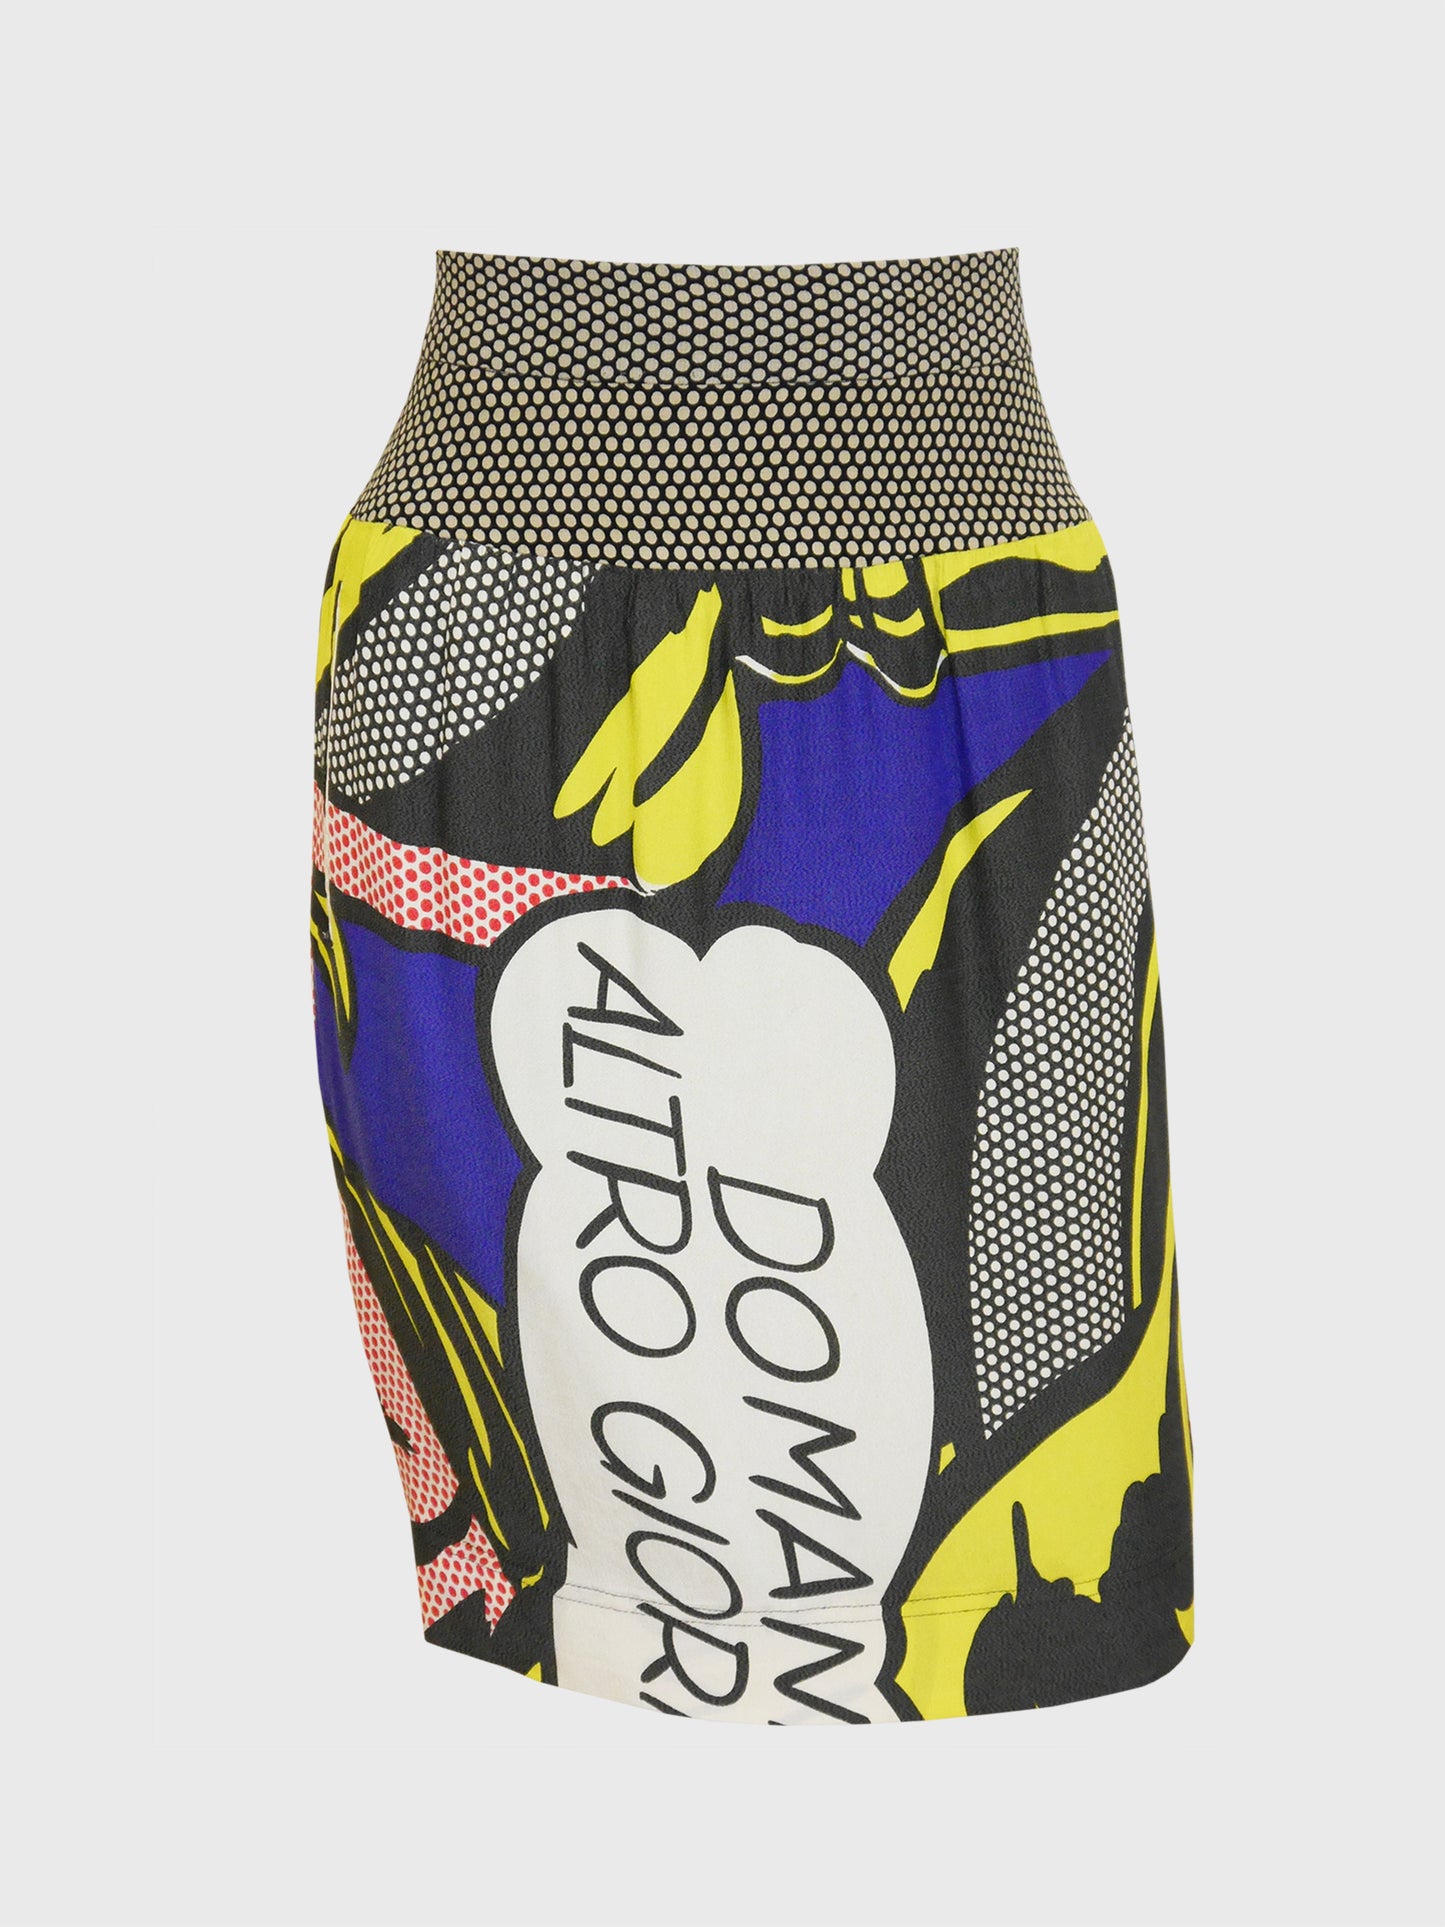 MOSCHINO Vintage Roy Lichtenstein "Girl with Hair Ribbon" Pop Art Print Skirt